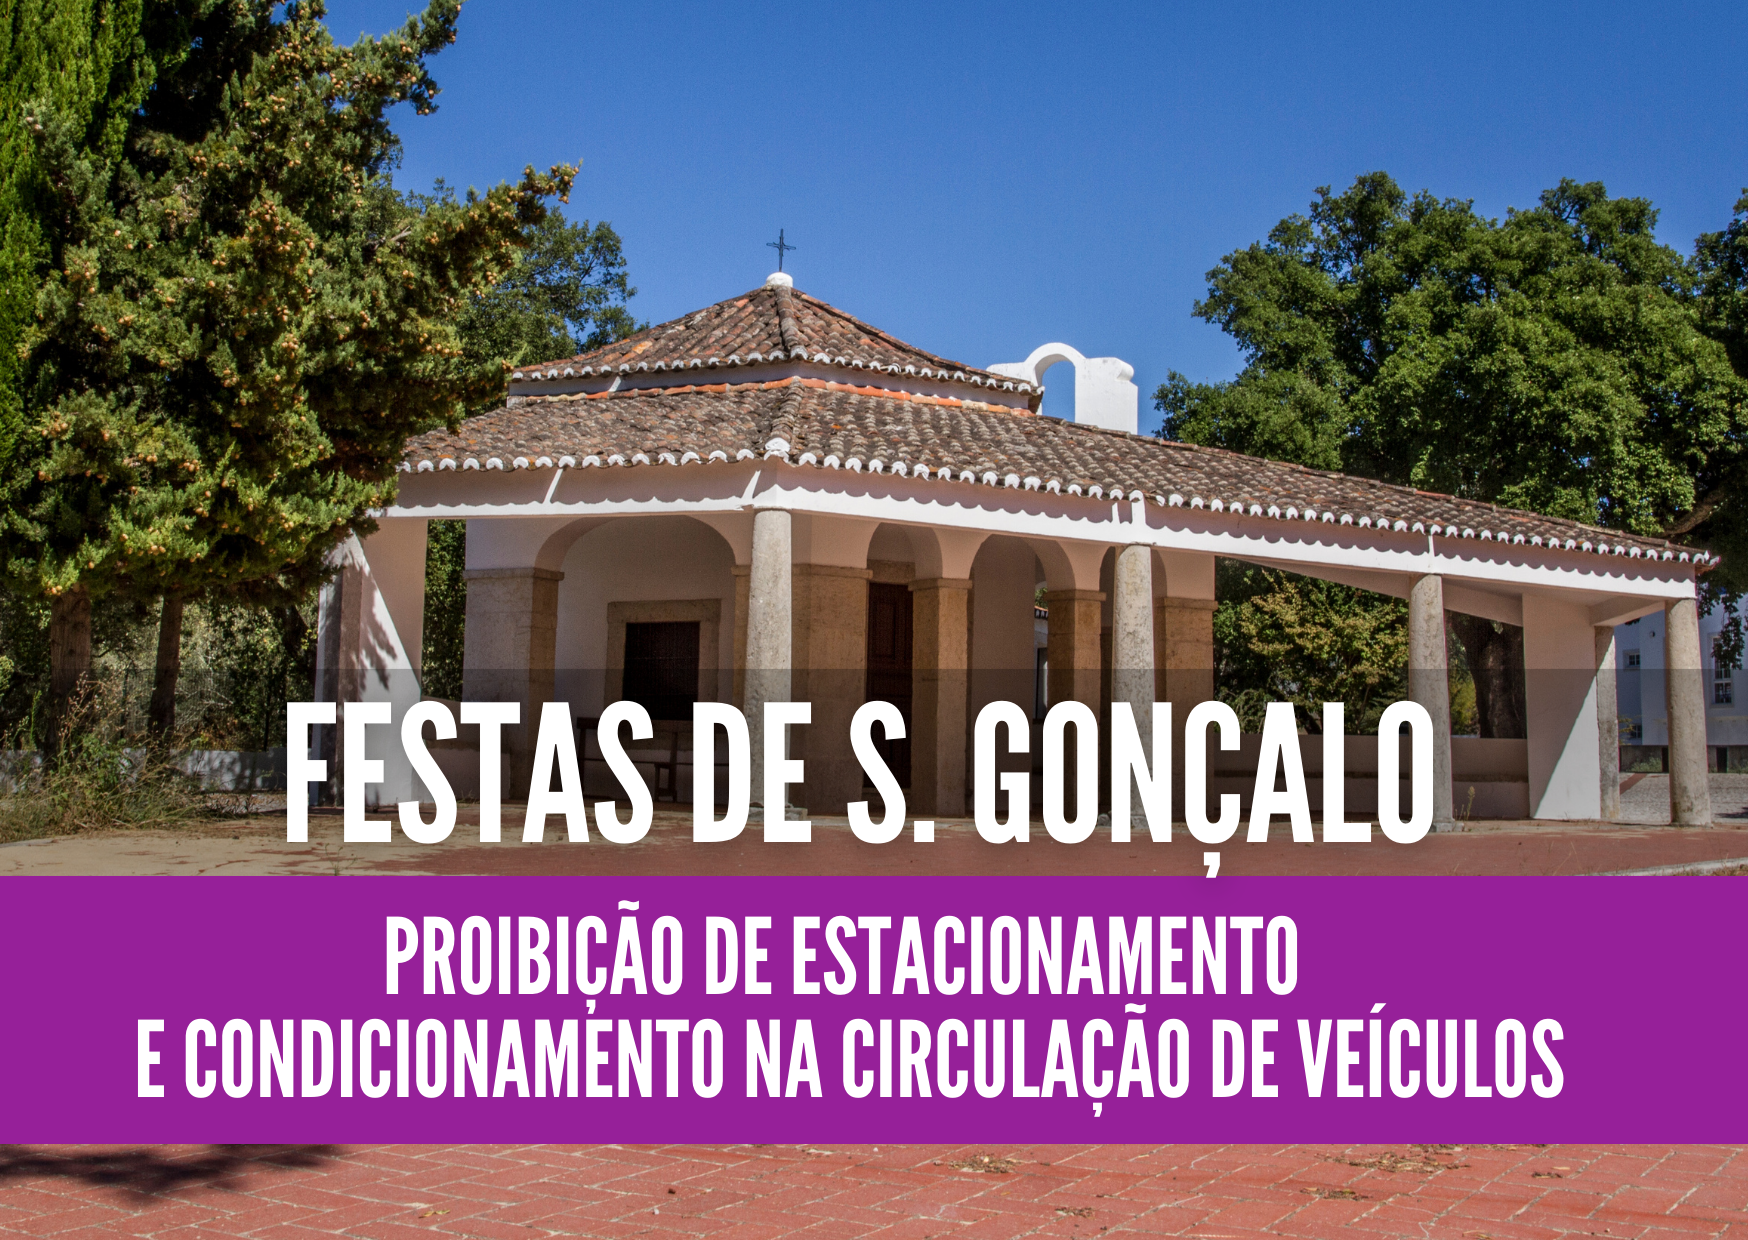 Festas de S. Gonçalo/Cabanas - trânsito condicionado de 13 a 25 maio